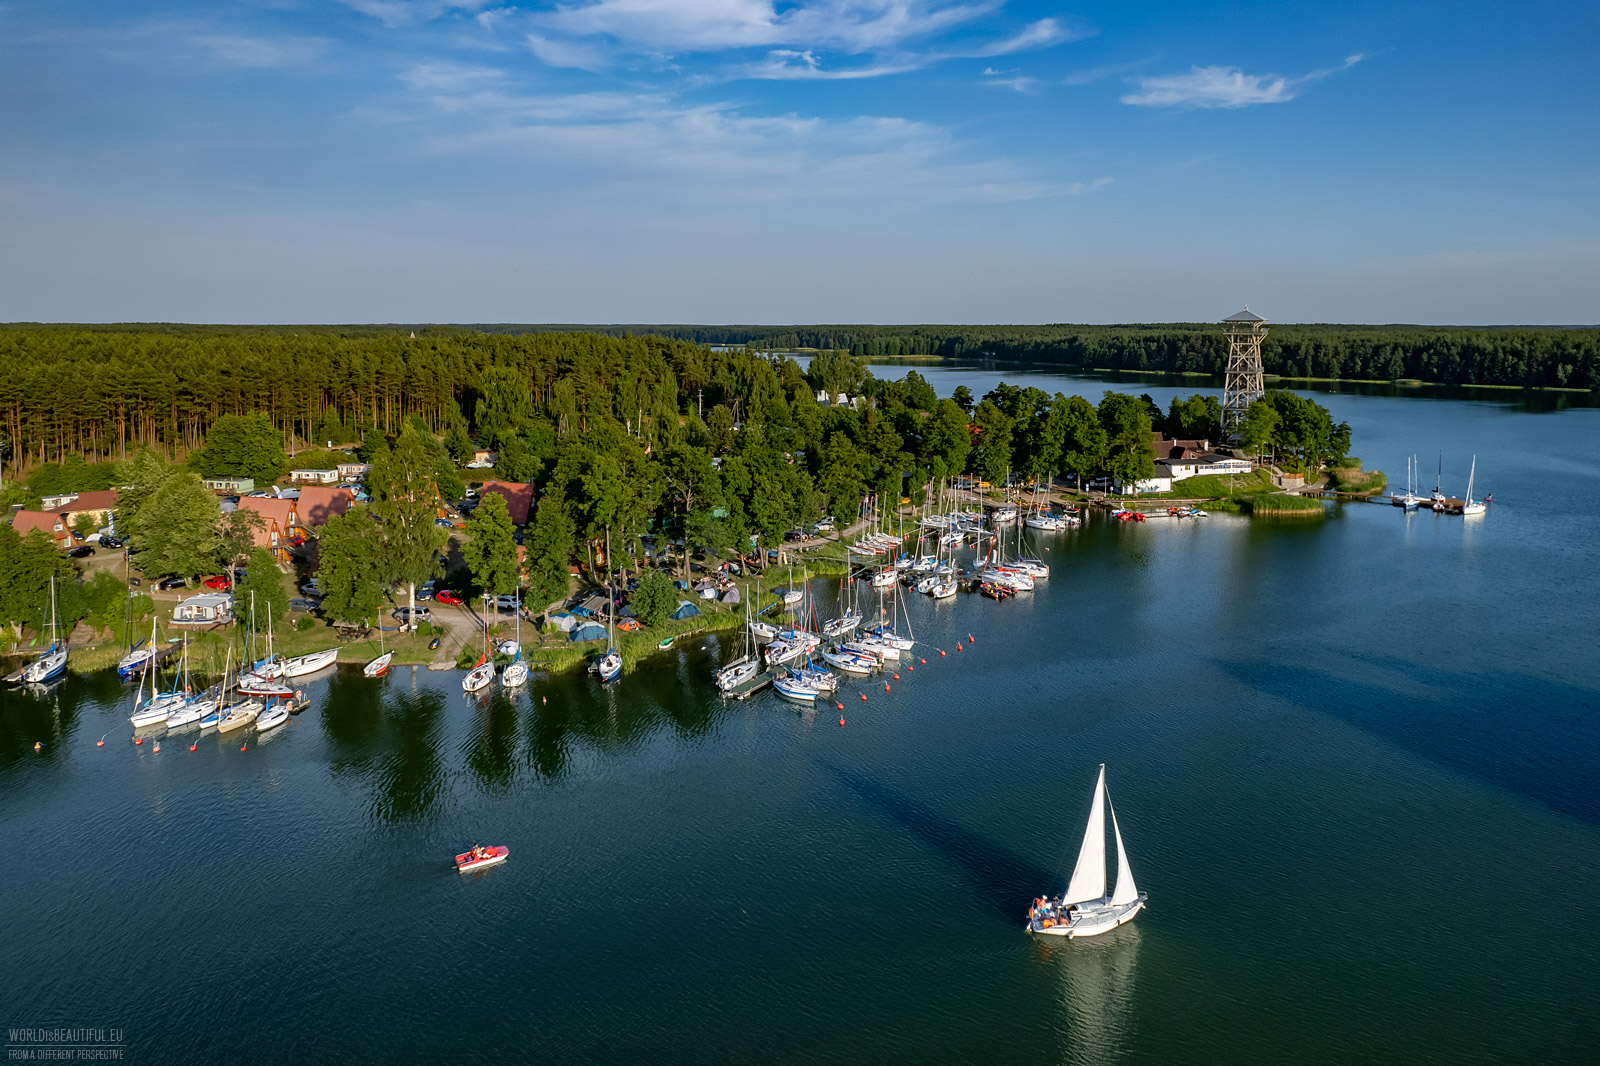 PTTK waterside resort Wdzydze Kiszewskie